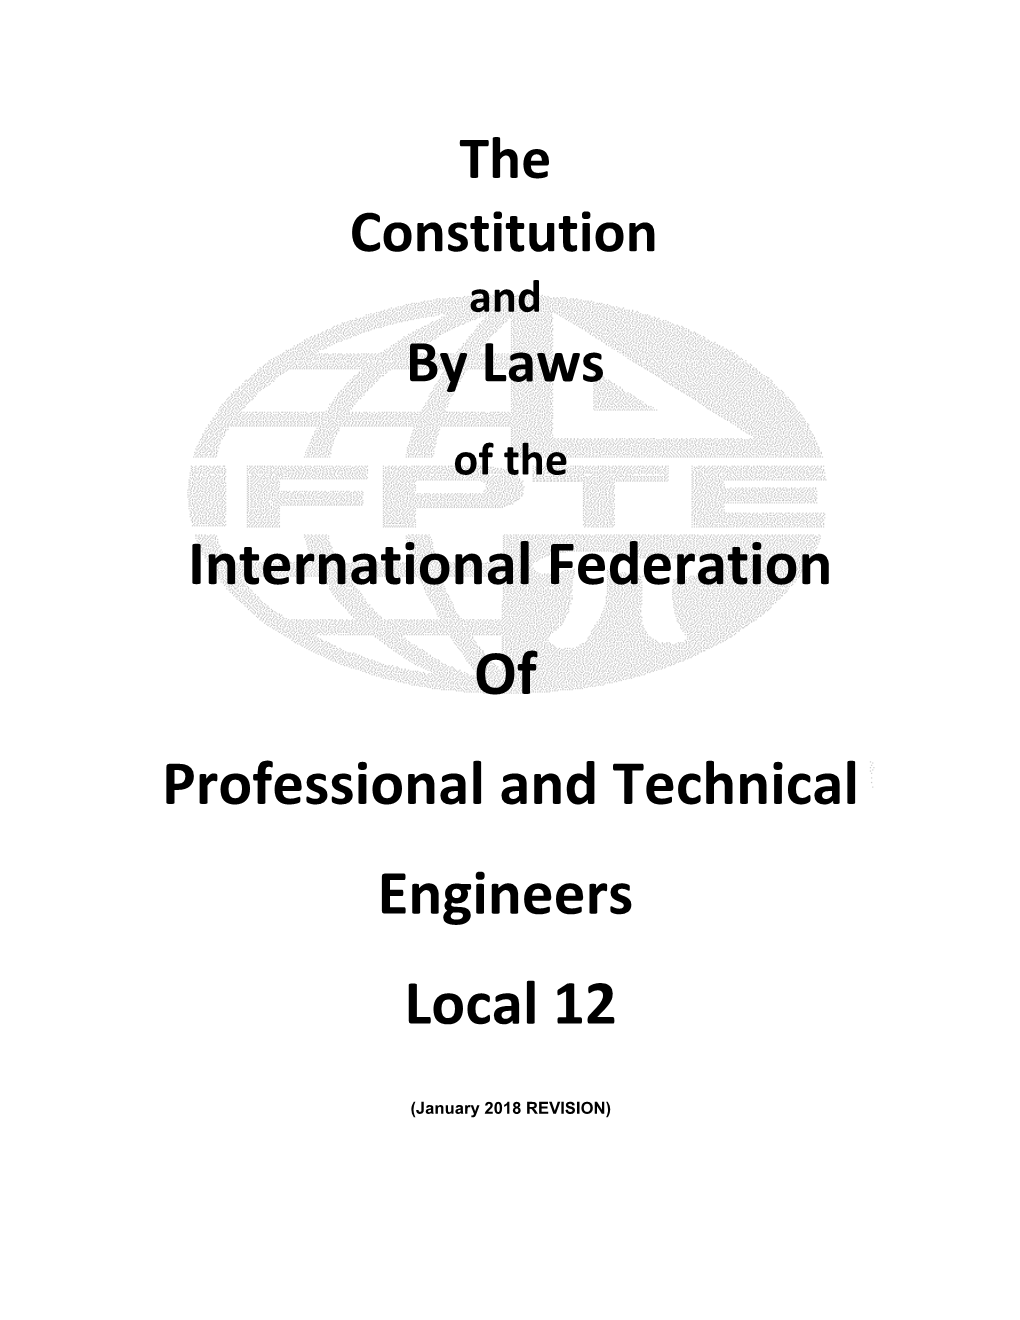 International Federation